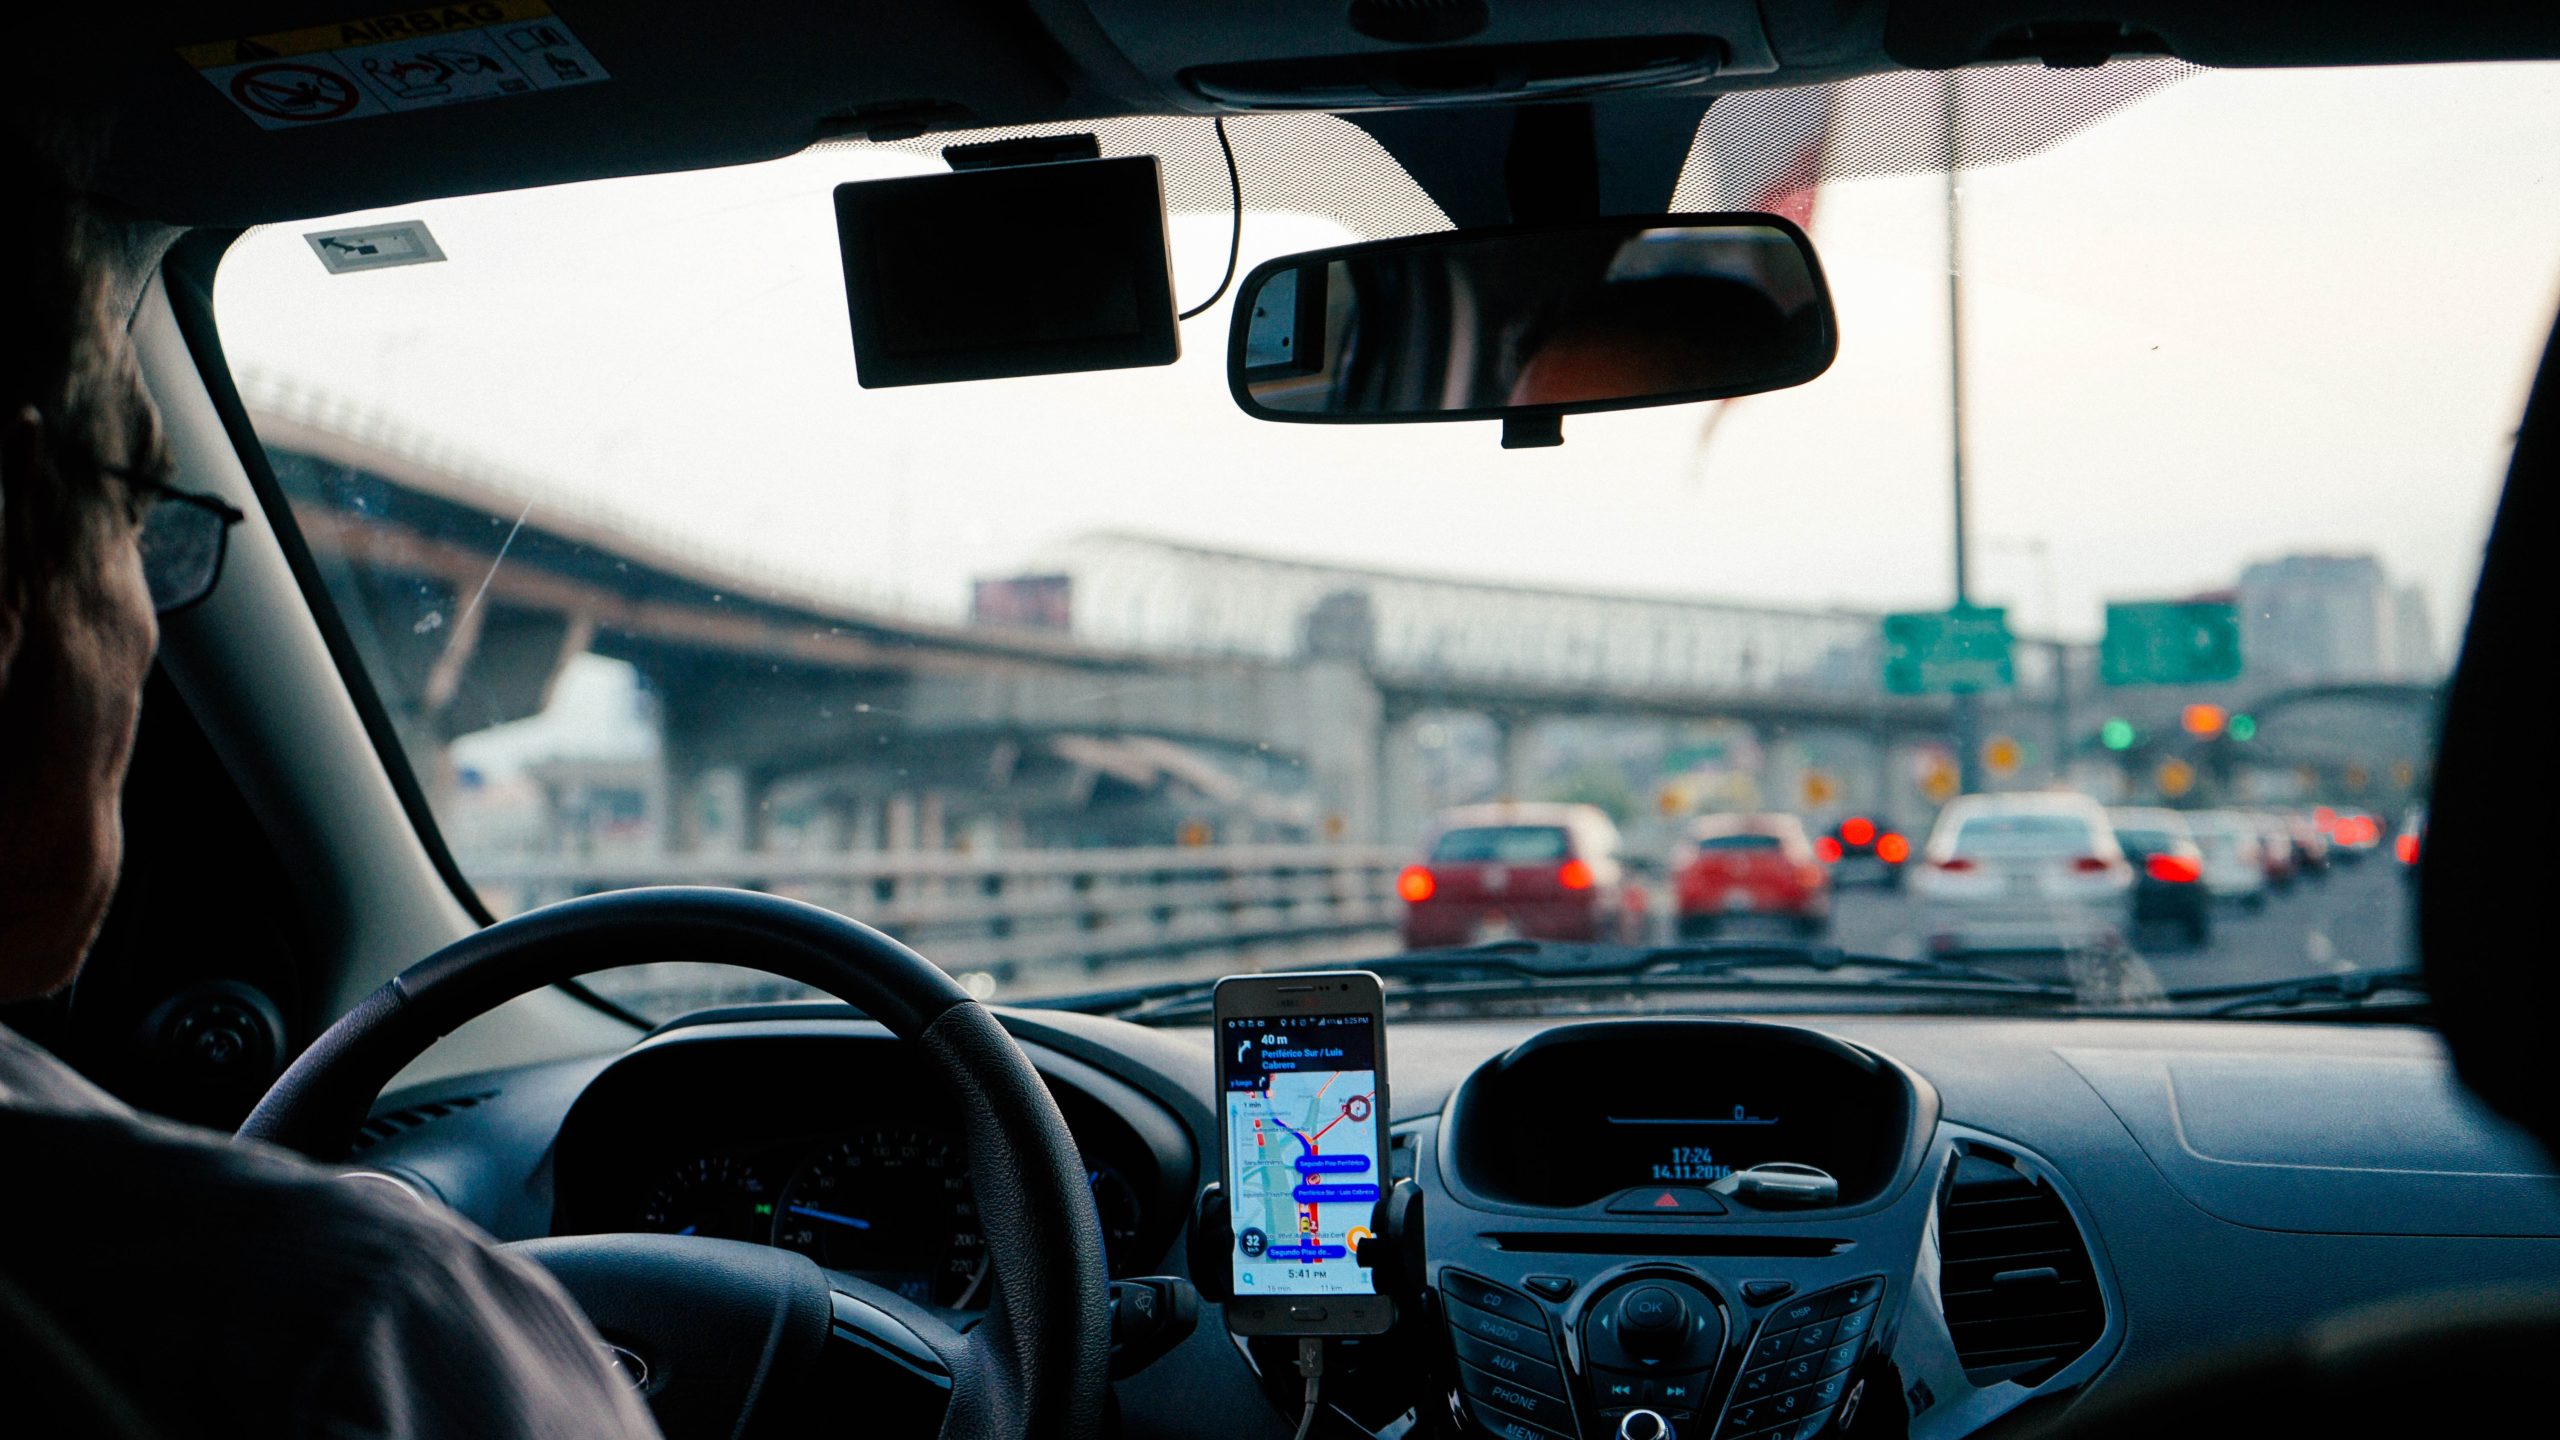 Foto por dentro do carro mostrando painel e telefone em rodovia.